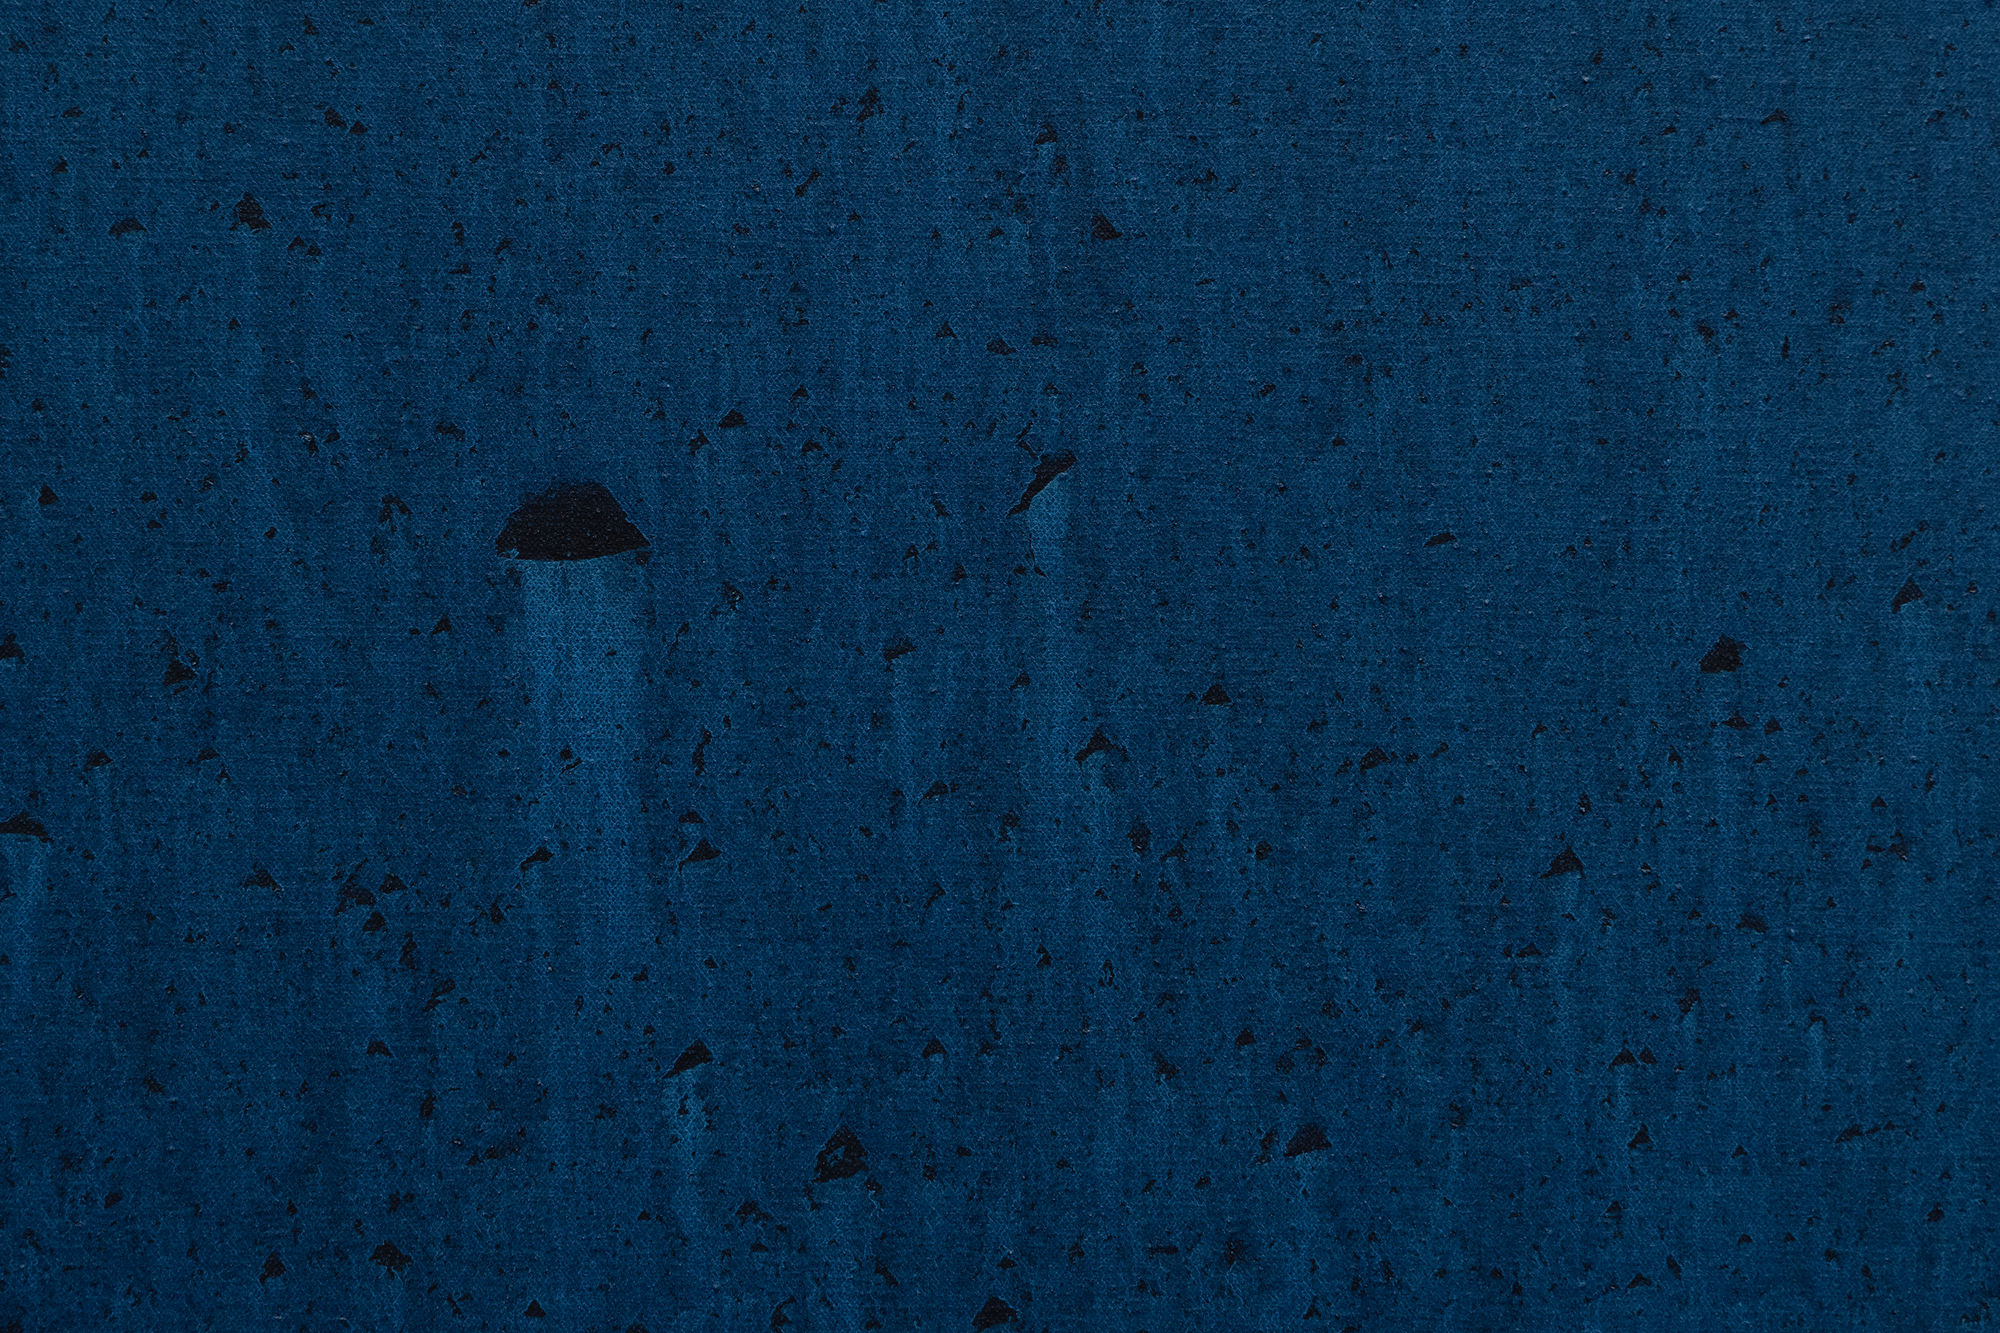 Schon früh etablierte sich Hood als Künstlerin metaphysisch aufgeladener Bilder, die sich nach ihrer Rückkehr nach Houston im Jahr 1962 mit verschiedenen Kosmologien auseinandersetzte. Blue Waters ist eines dieser Werke, die ihre beharrliche Suche nach spiritueller Nahrung widerspiegeln. Ein Band aus gesättigtem, undurchsichtigem Blau ragt in eine Kugel aus klarem Azurblau hinein, die an einen irdischen, wässrigen Globus erinnert. Dieser kühne und doch harmonische Eingriff gleicht einem ätherischen Arm, der einen flüssigen Zustand in ein hypnotisierendes, phosphoreszierendes Phthalogrün verwandelt, dessen Opulenz und strömende Brillanz göttliches Eingreifen suggeriert und die Metapher der &quot;Hand Gottes&quot; heraufbeschwört, die das Wesen des Lebens belebt. Hoods meisterhafte Verwendung von Farbe und Form lädt oft zu Interpretationen einer kosmischen oder spirituellen Umarmung innerhalb der natürlichen Welt ein. Doch ihre klaren Farbverläufe zeugen nicht von Zufälligkeit oder Ungewissheit, sondern von einer bemerkenswerten Beherrschung und Kontrolle, die Blue Waters ein weiteres Element der Ehrfurcht verleiht.